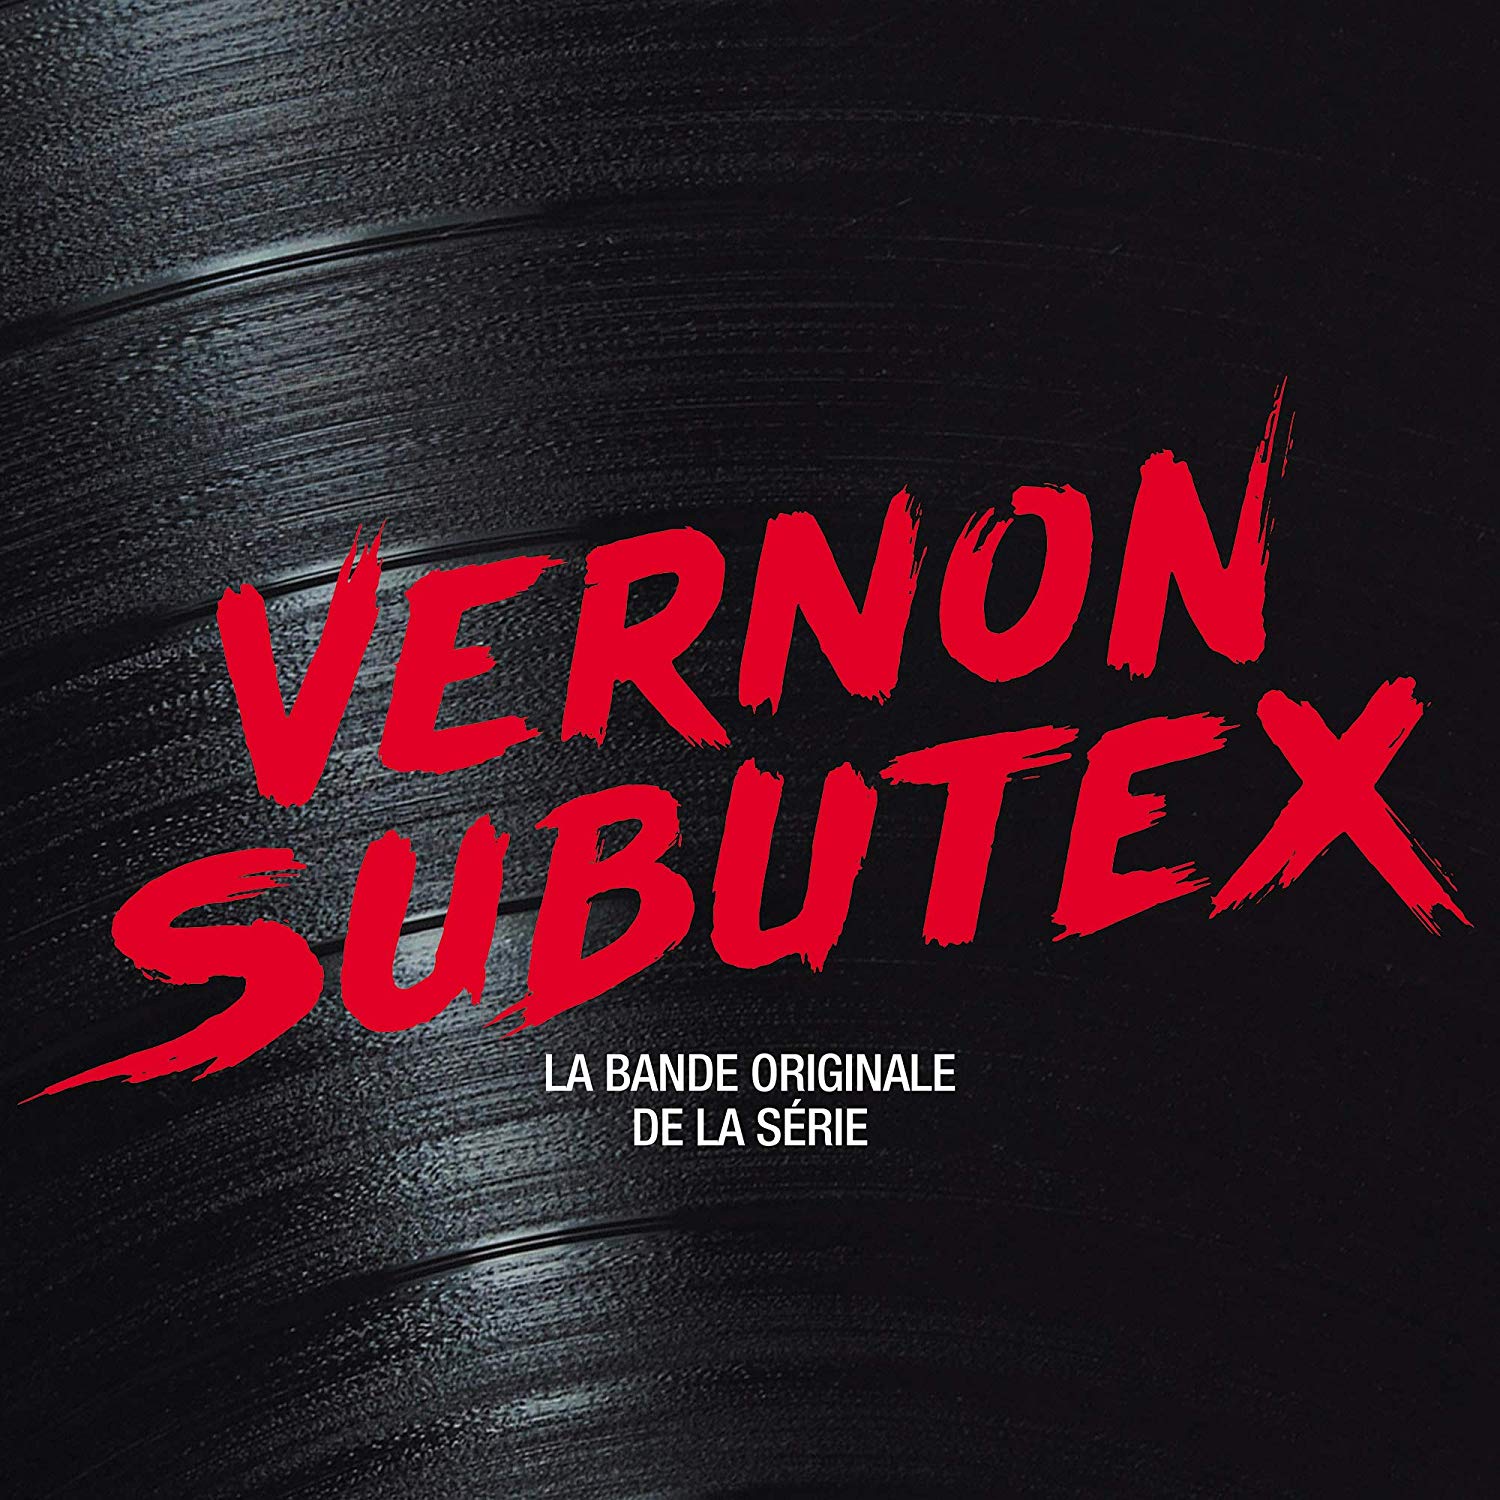 Vernon Subutex (Srie)